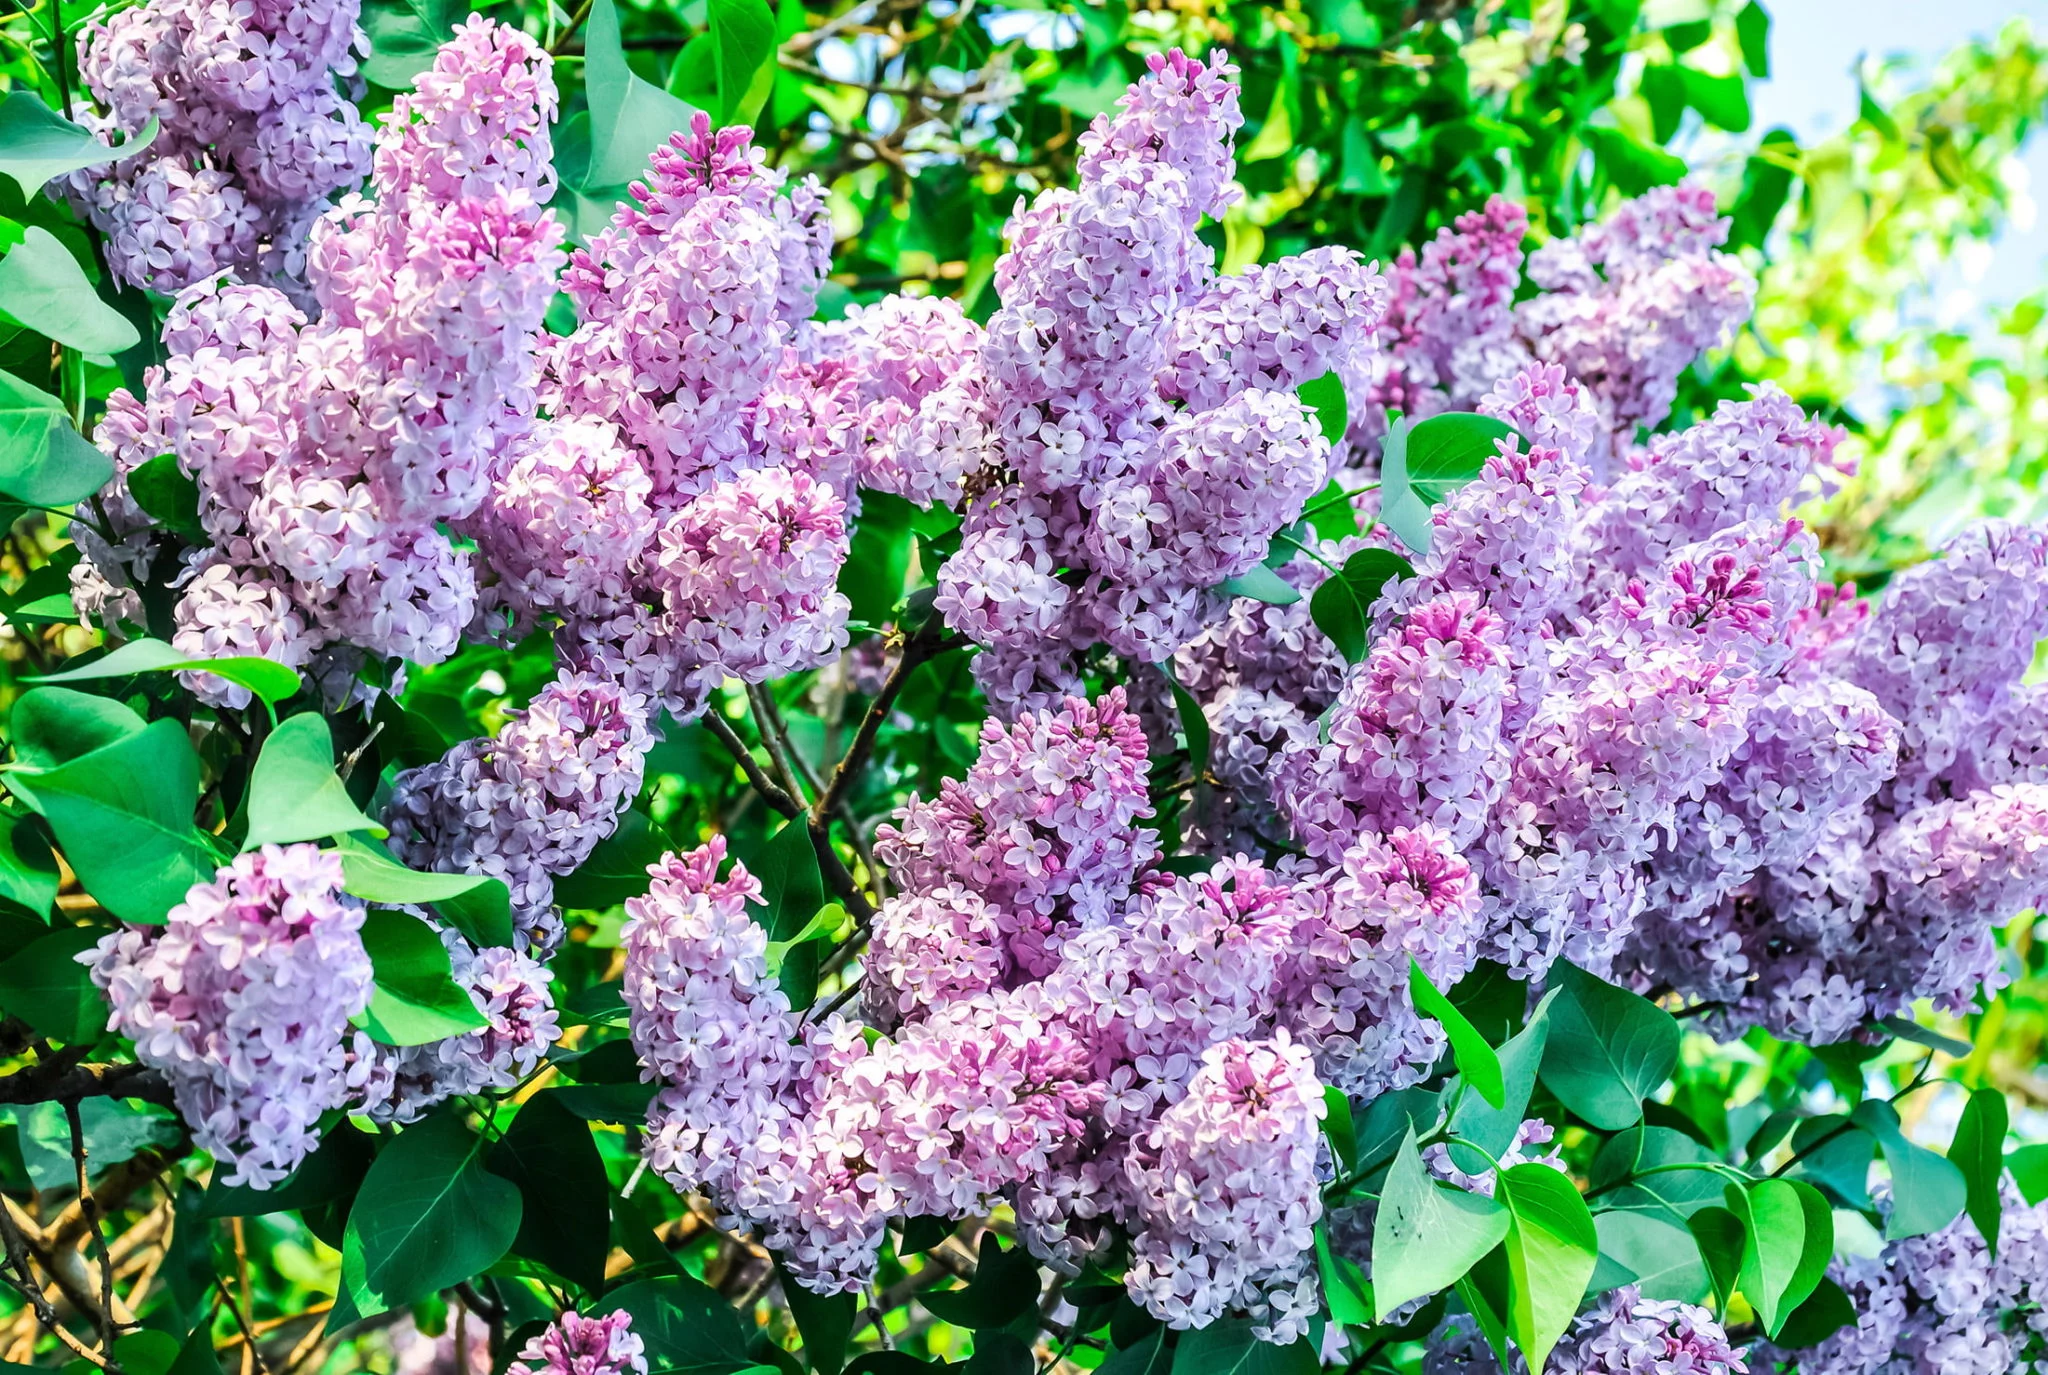 Lilac shrub in flower